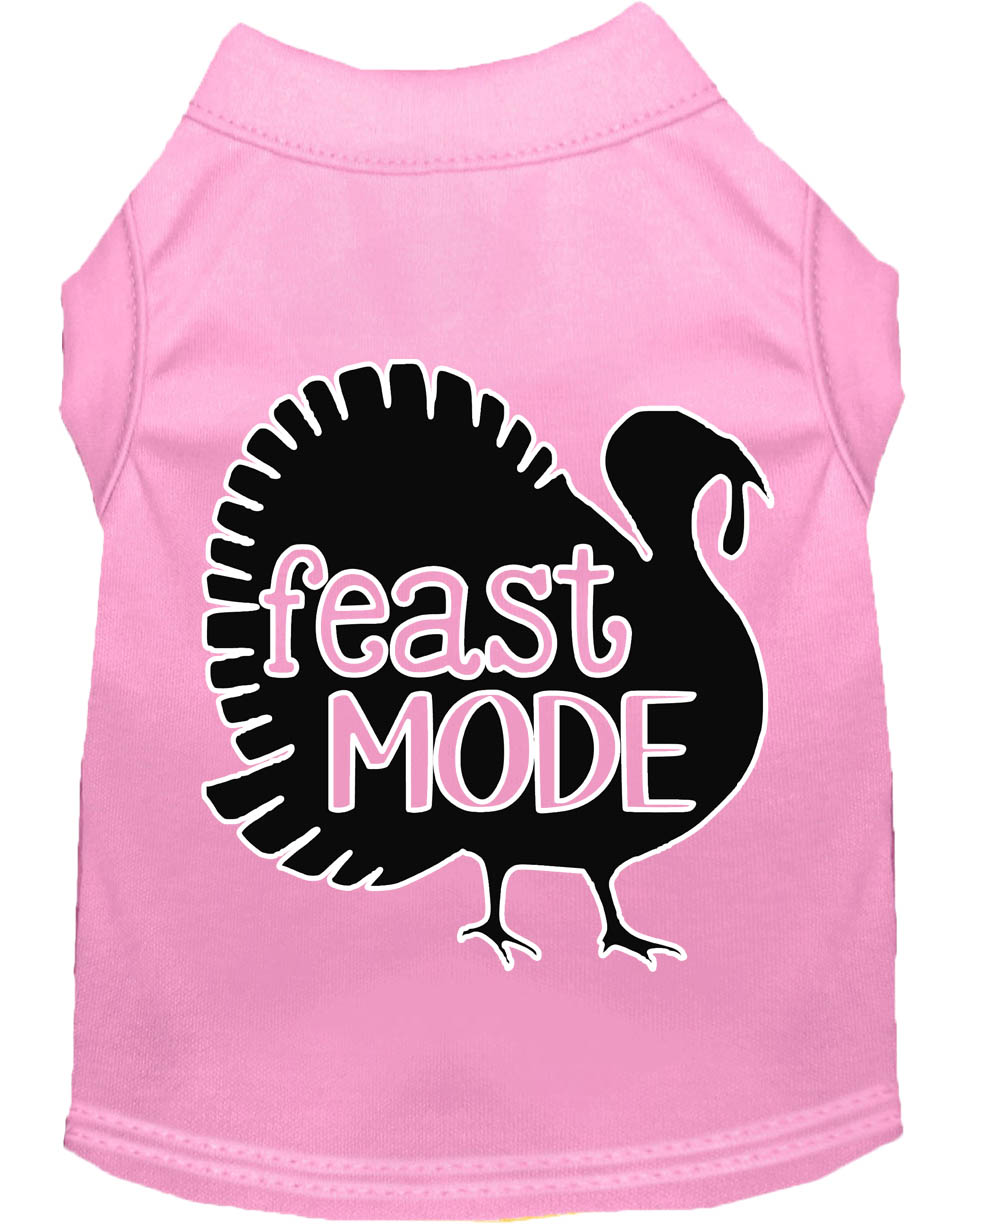 Feast Mode Screen Print Dog Shirt Light Pink XL